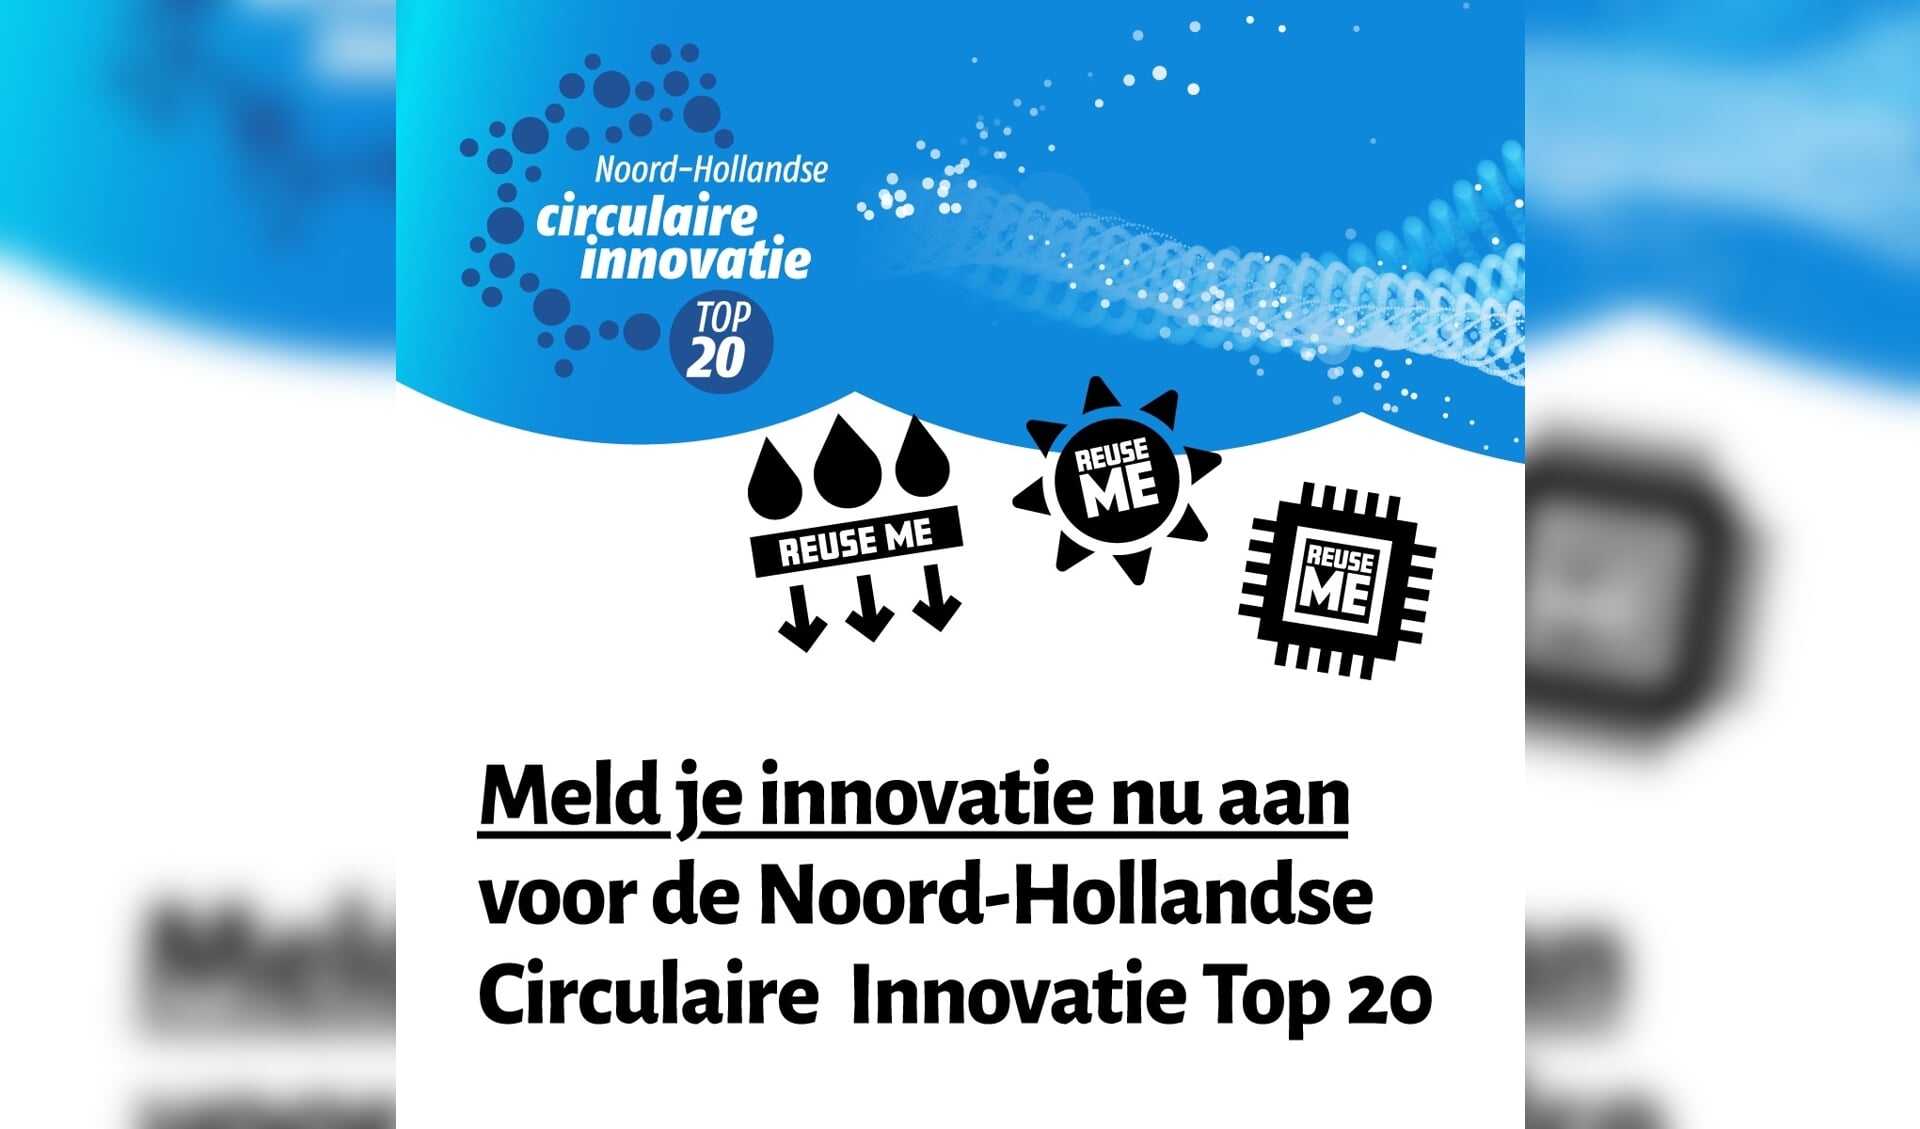 Meld je innovatie aan voor de Noord-Hollandse Circulaire Innovatie Top 20.